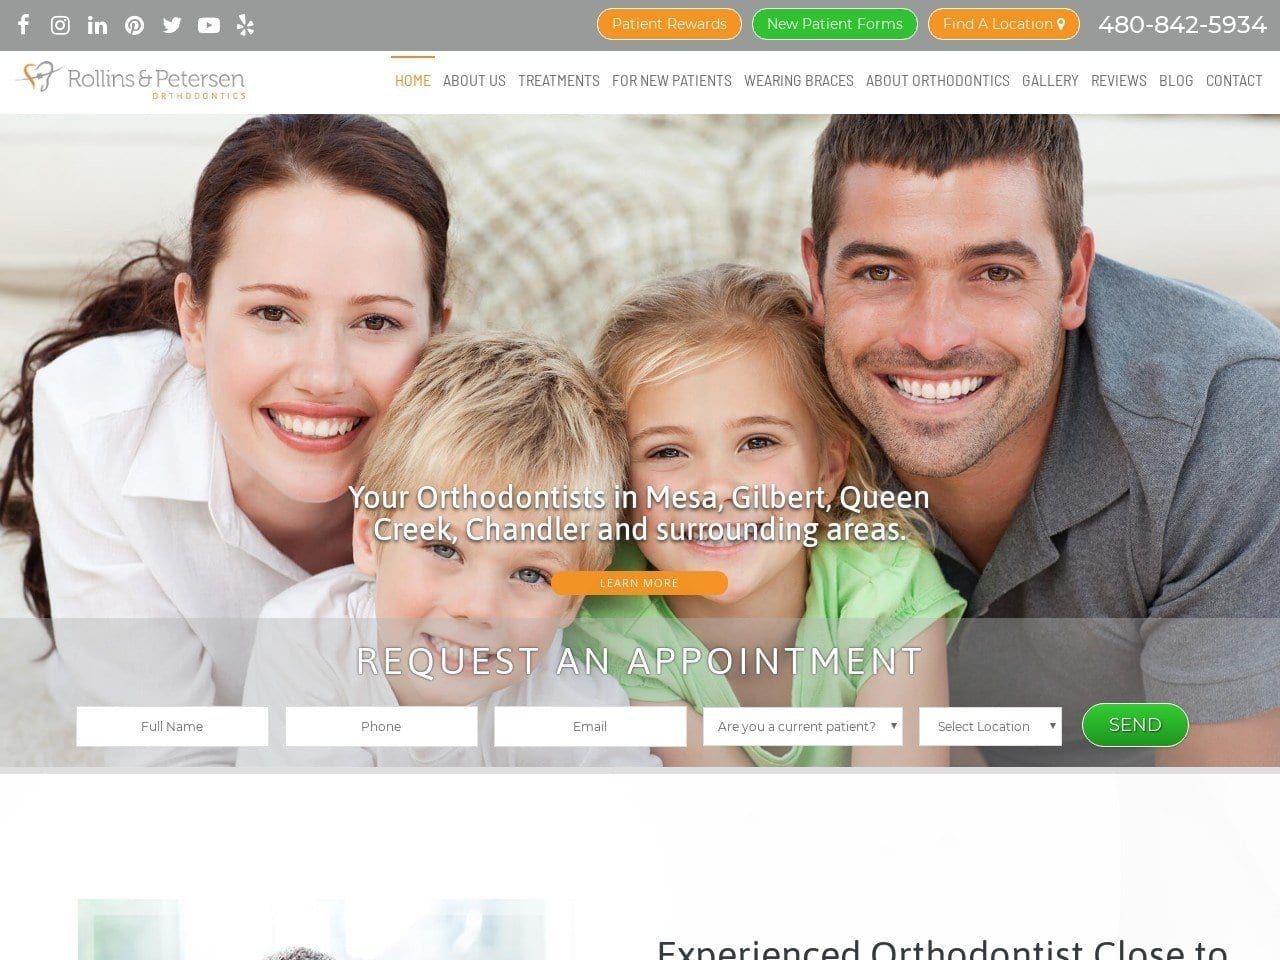 Rollins & Petersen Orthodontics Website Screenshot from arizonabraces.com